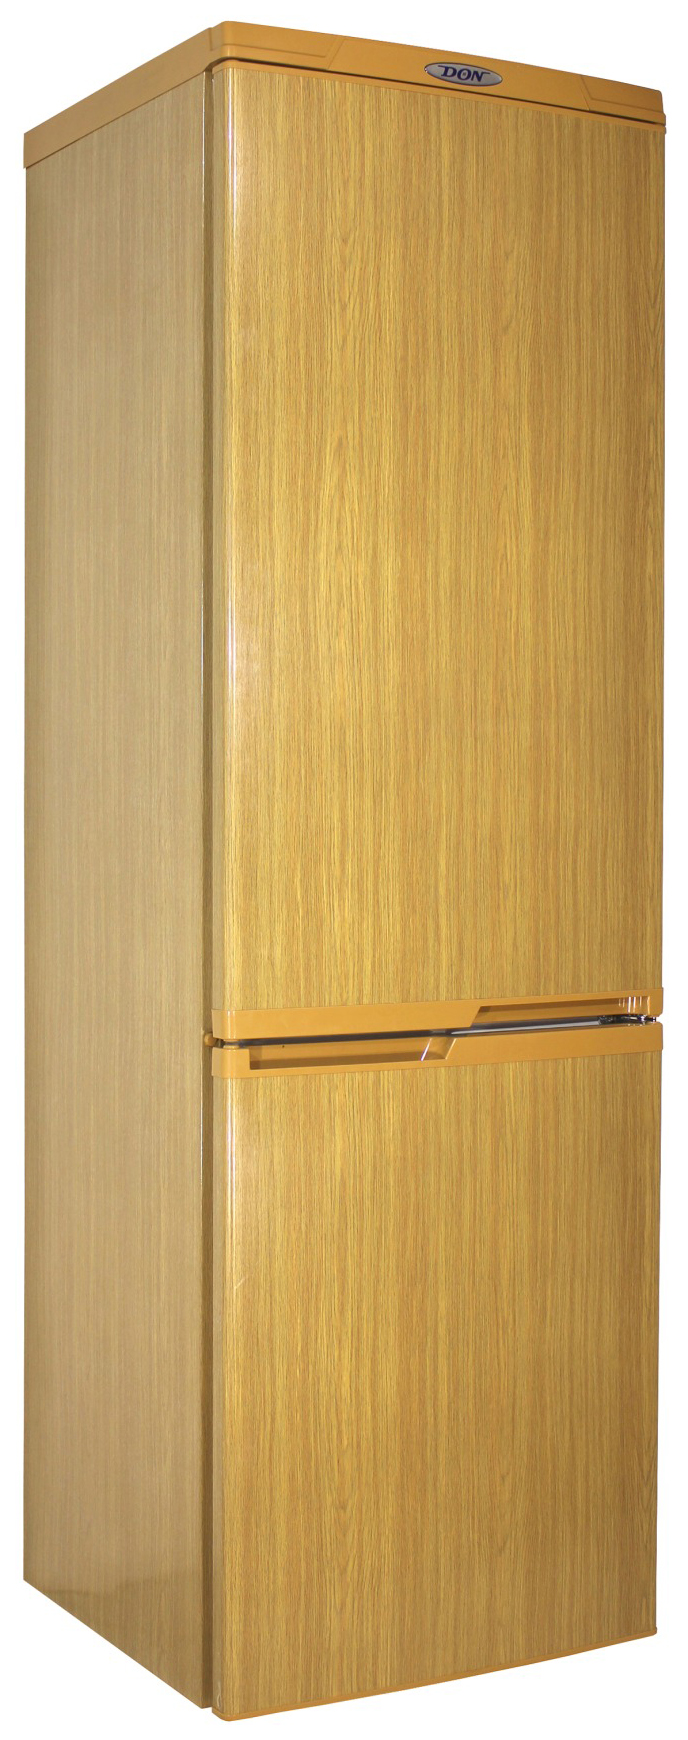 Холодильник DON R 291 DUB коричневый холодильник tesler rc 95 коричневый